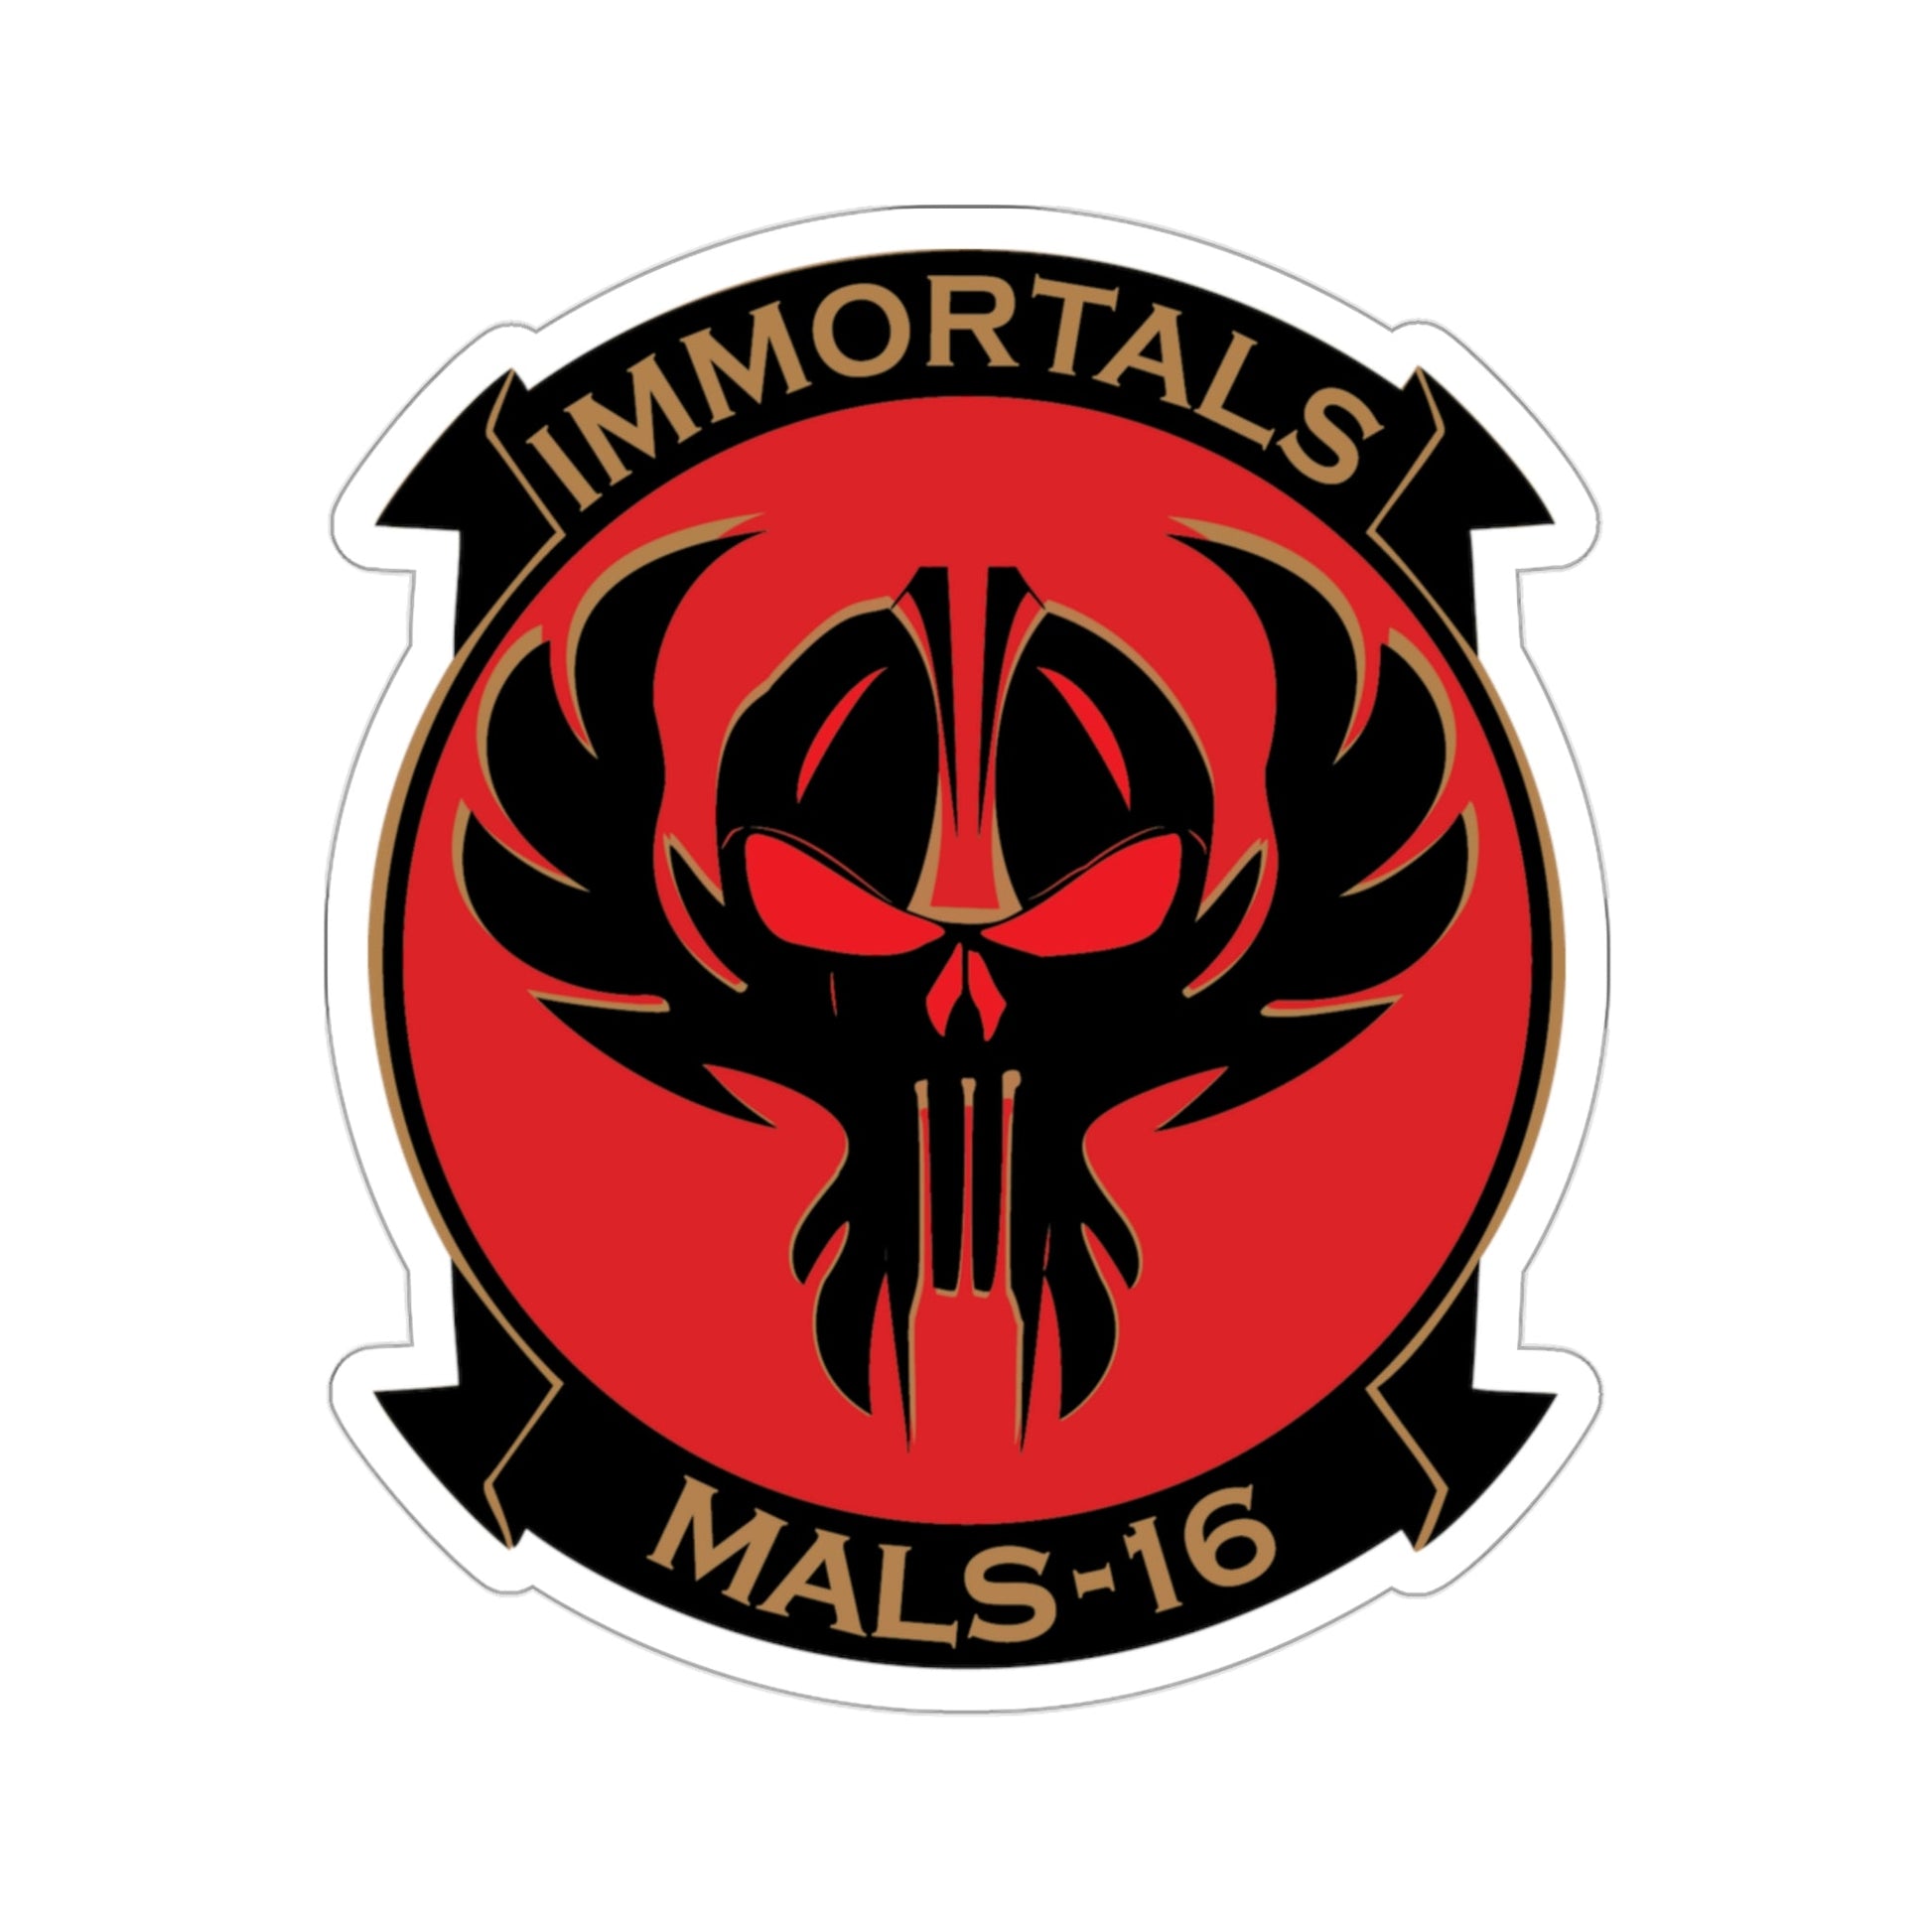 MALS 16 Immortals (USMC) STICKER Vinyl Die-Cut Decal-3 Inch-The Sticker Space